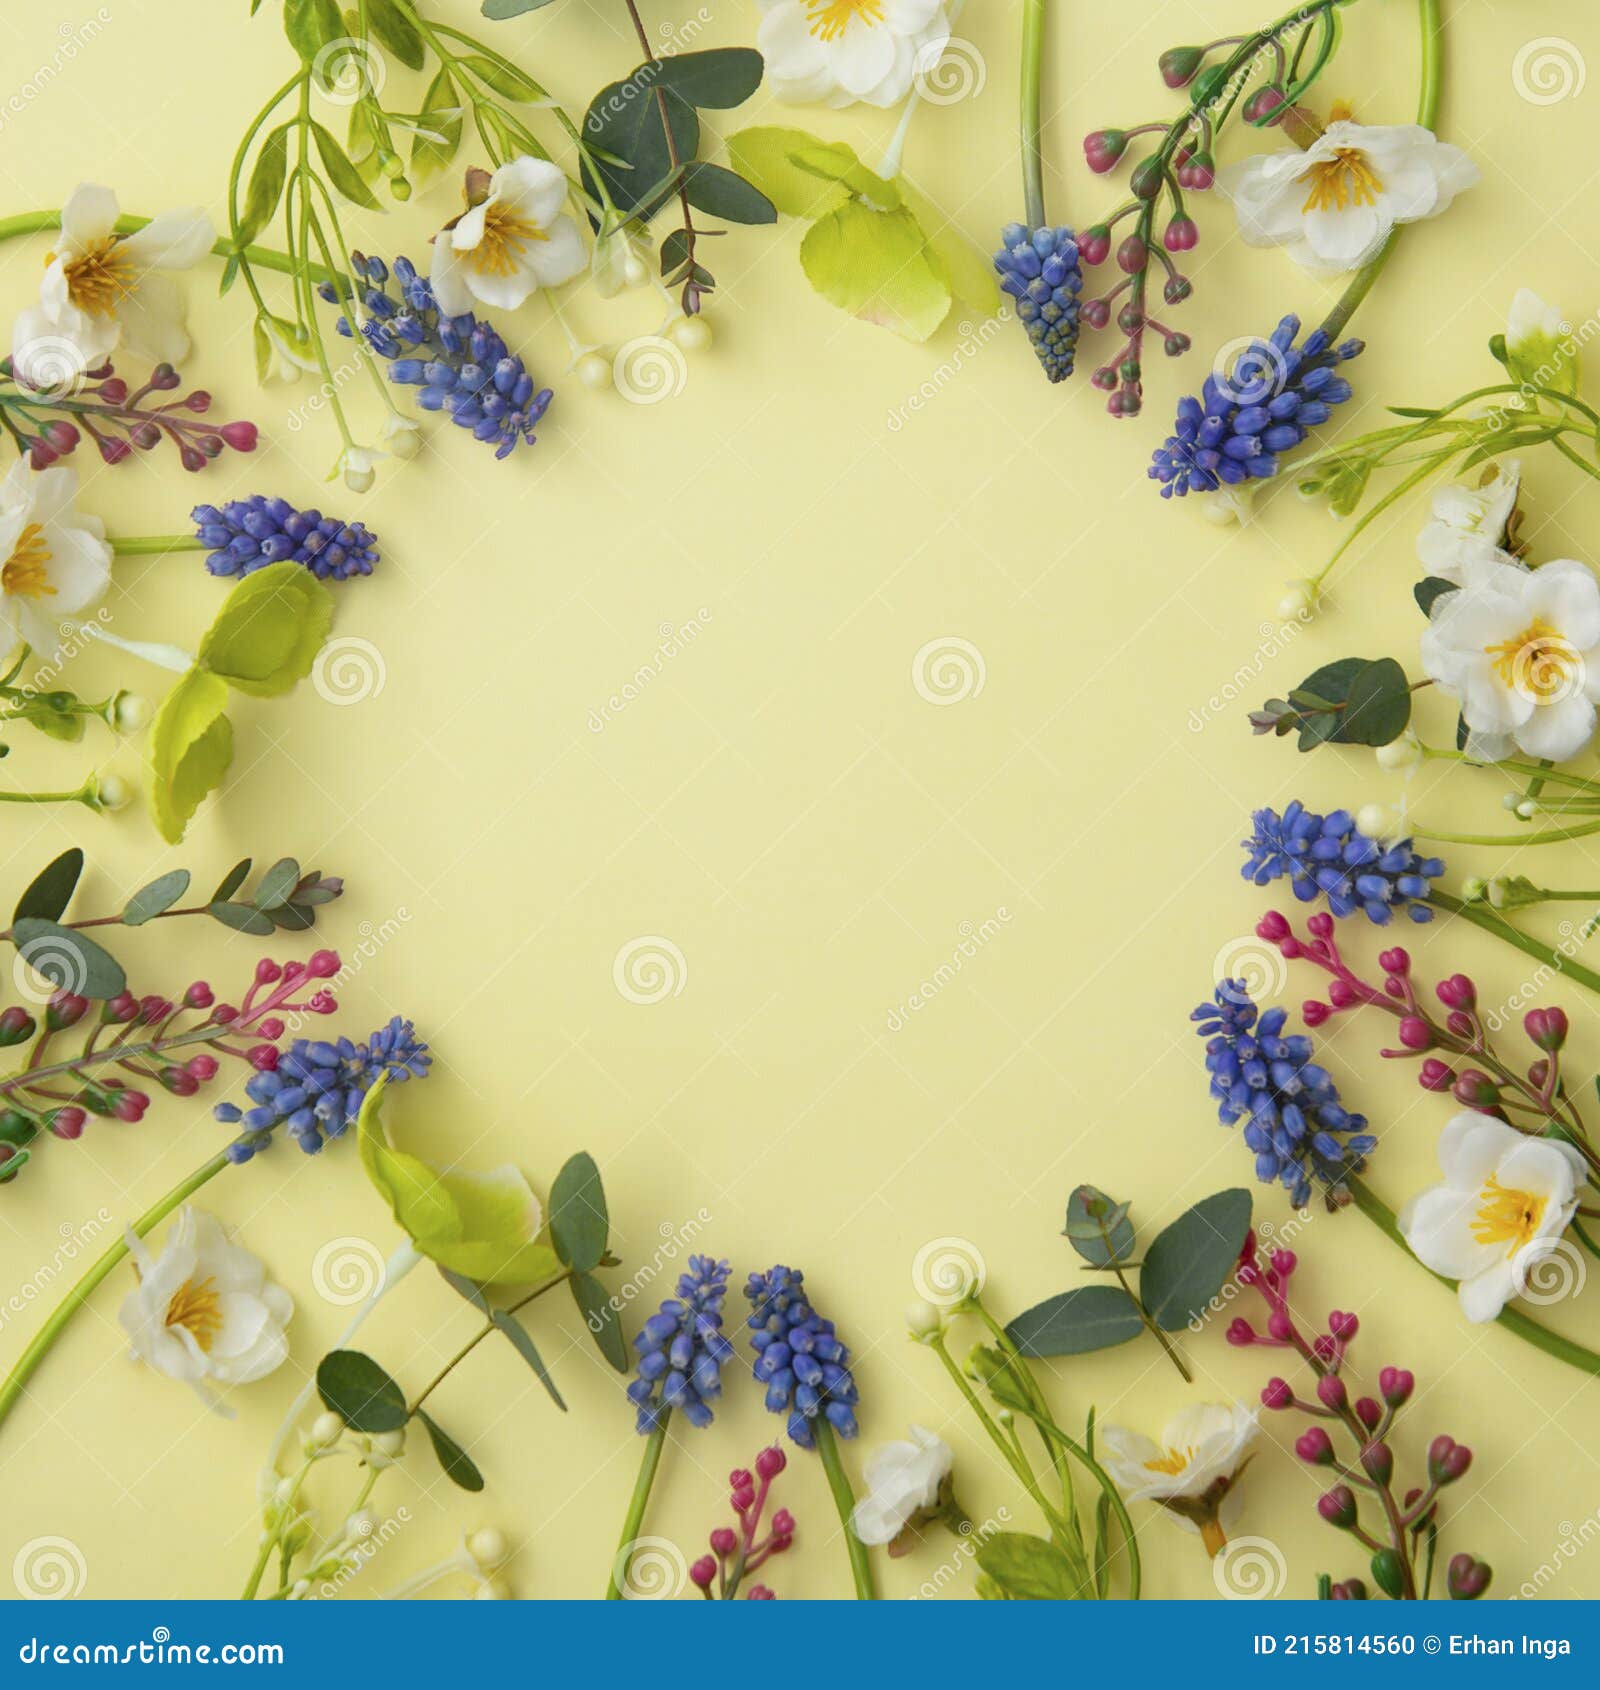 композиция круга весенних цветов. квадратная рамка из мускаров и дикихцветов на пастельно-желтом фоне. счастливый Стоковое Фото - изображениенасчитывающей украшения, открытка: 215814560